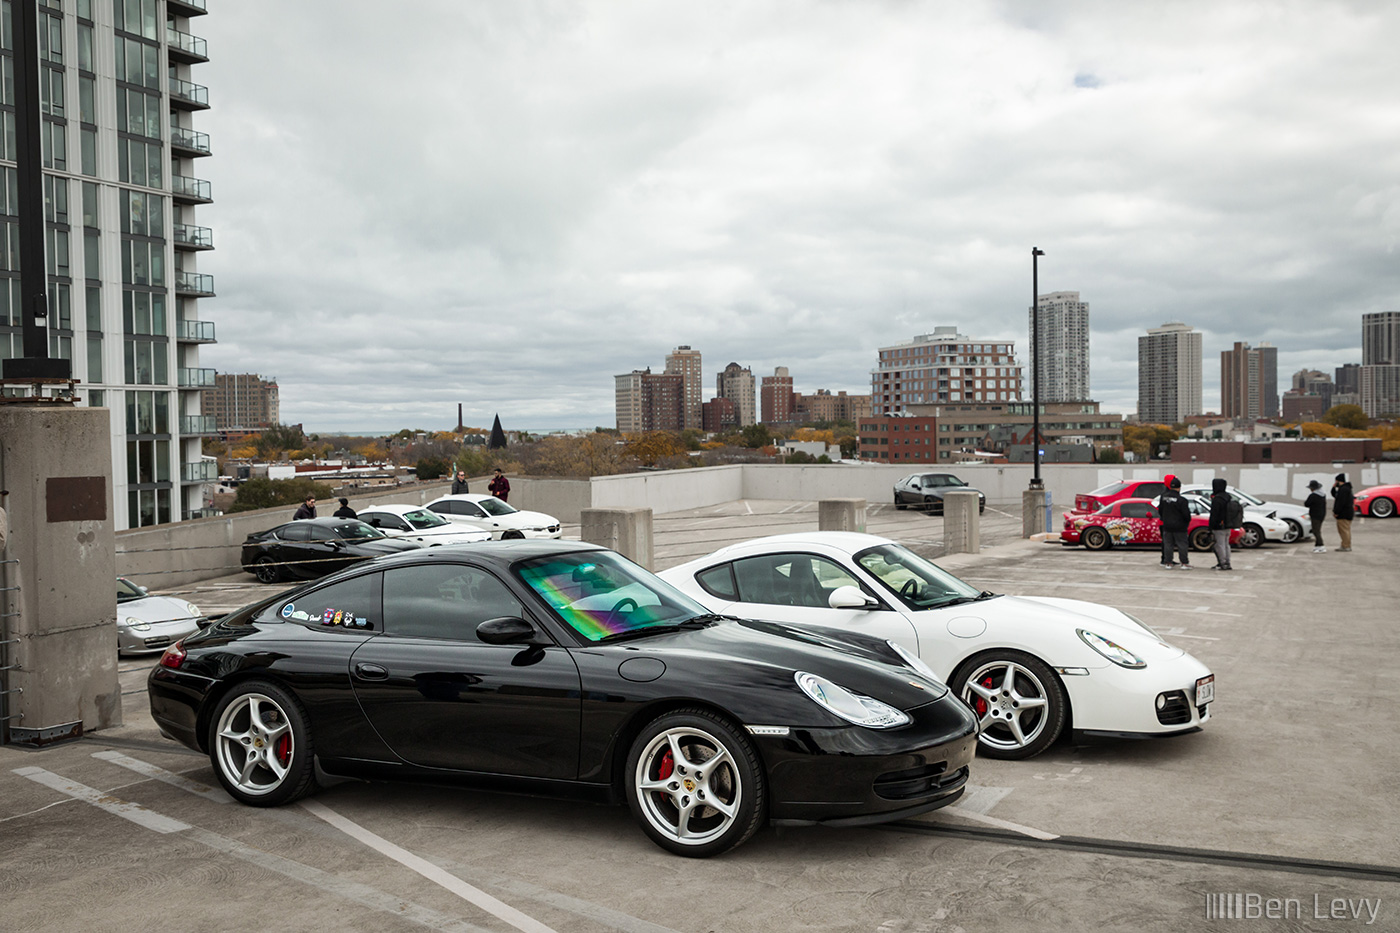 Black Porsche 911 and White Boxtser in a Chicago Garage